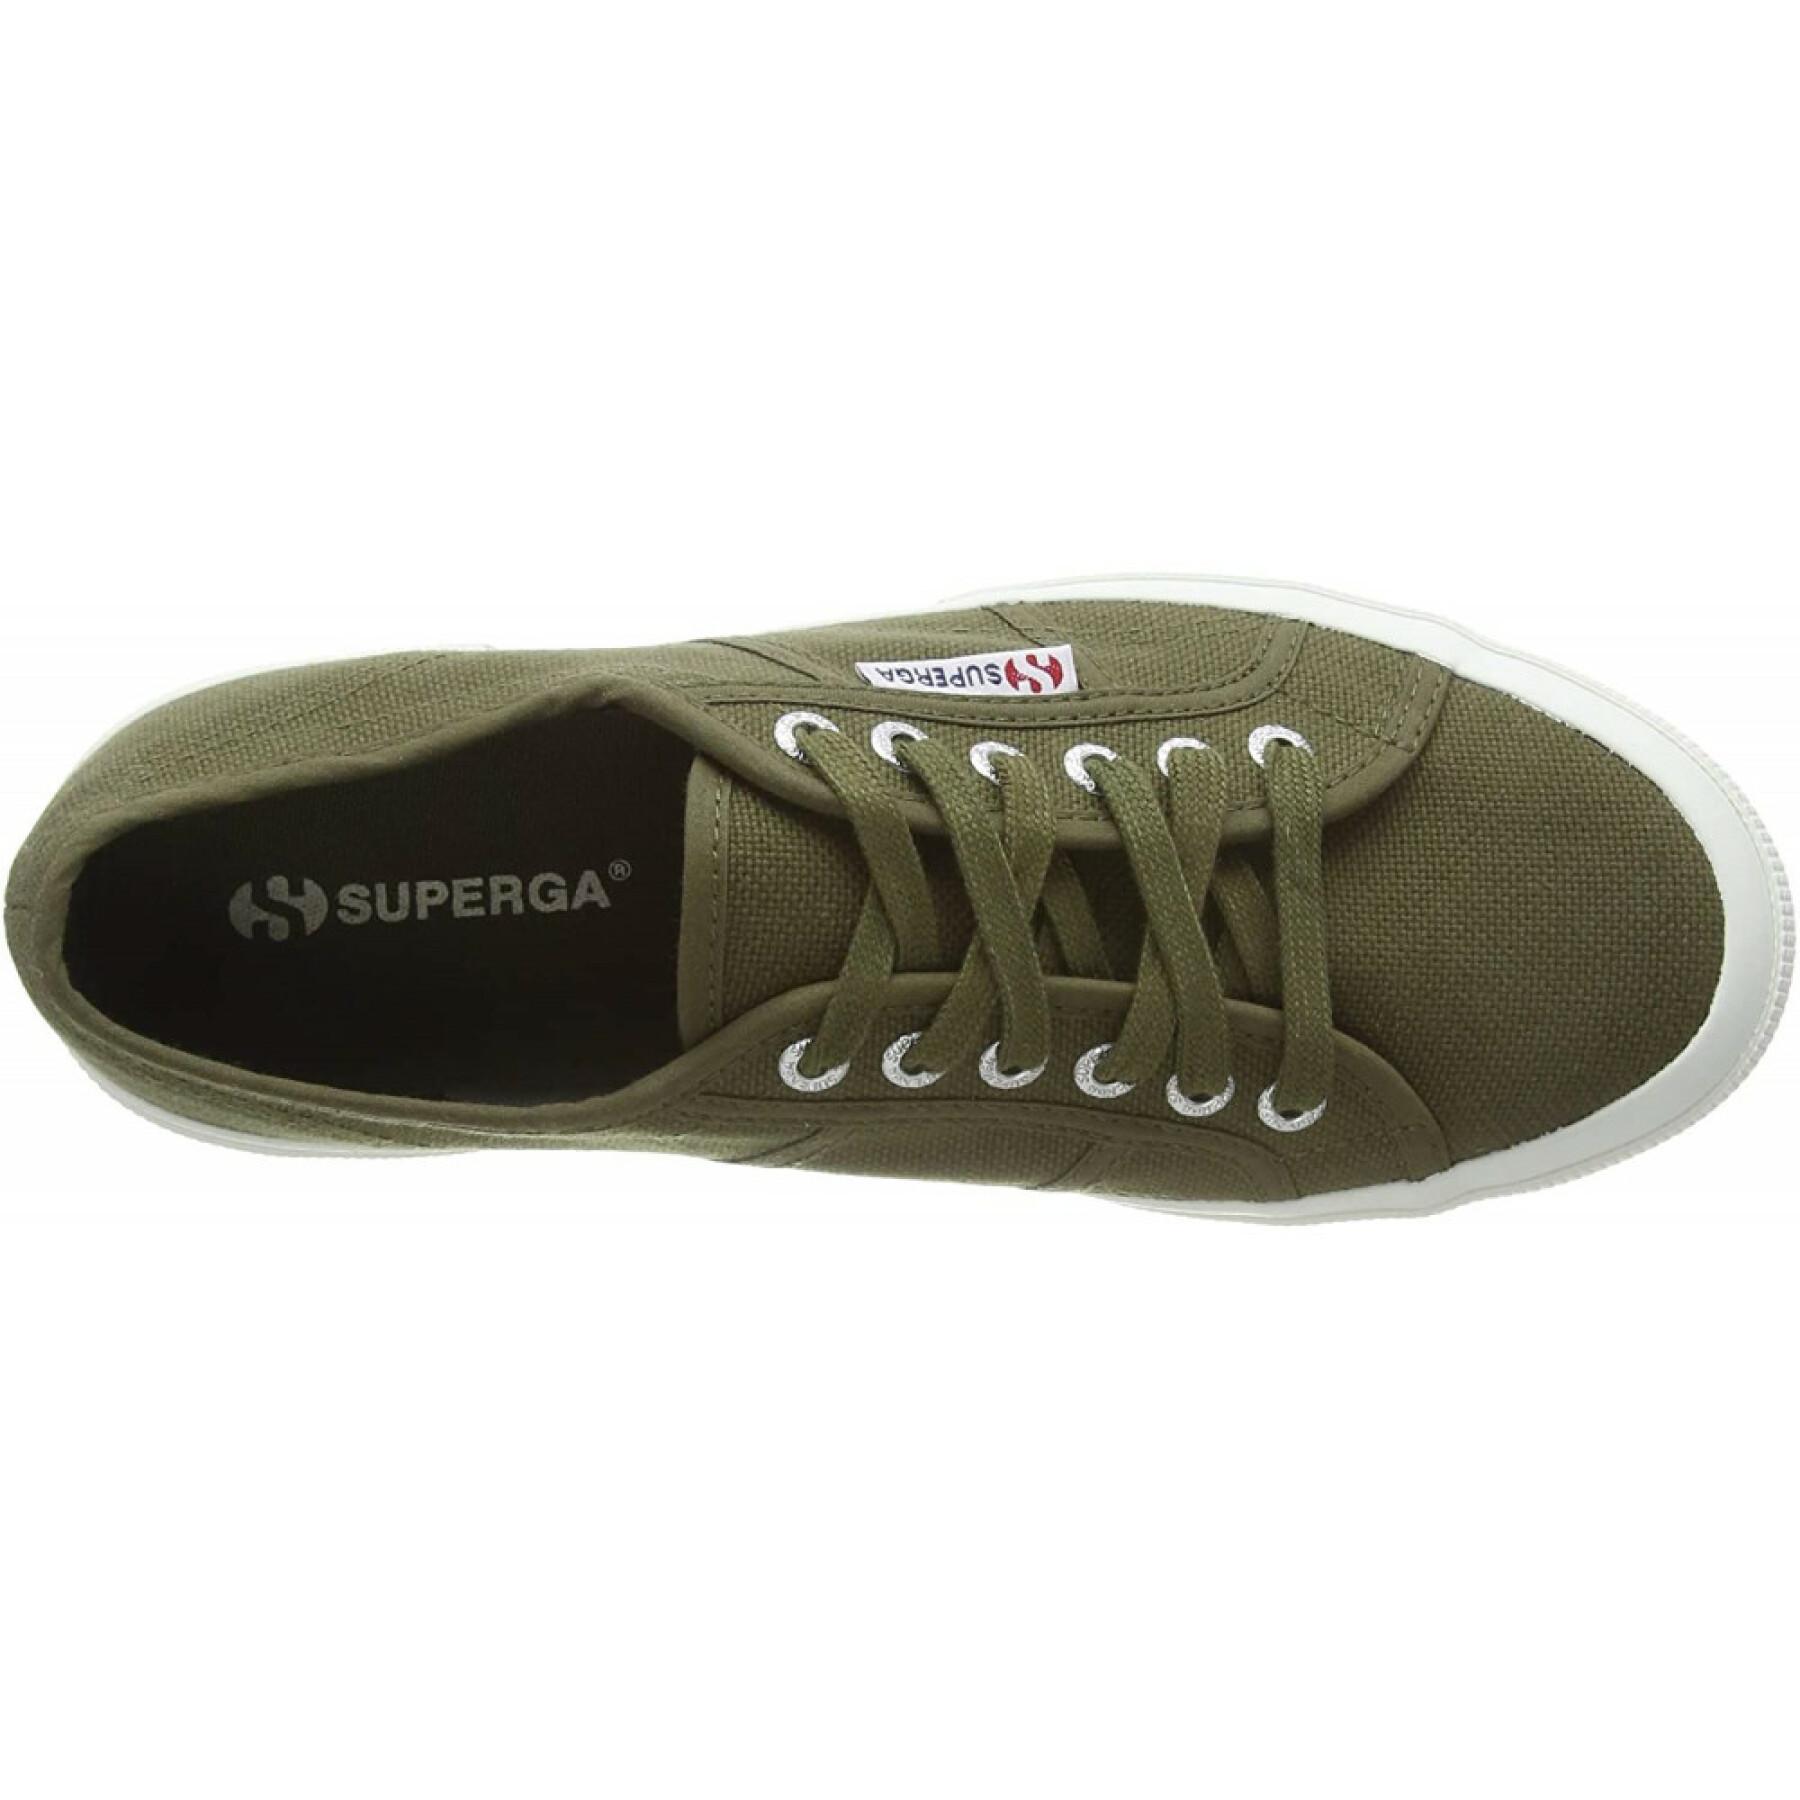 Schuhe Superga 2750 Cotu Classic